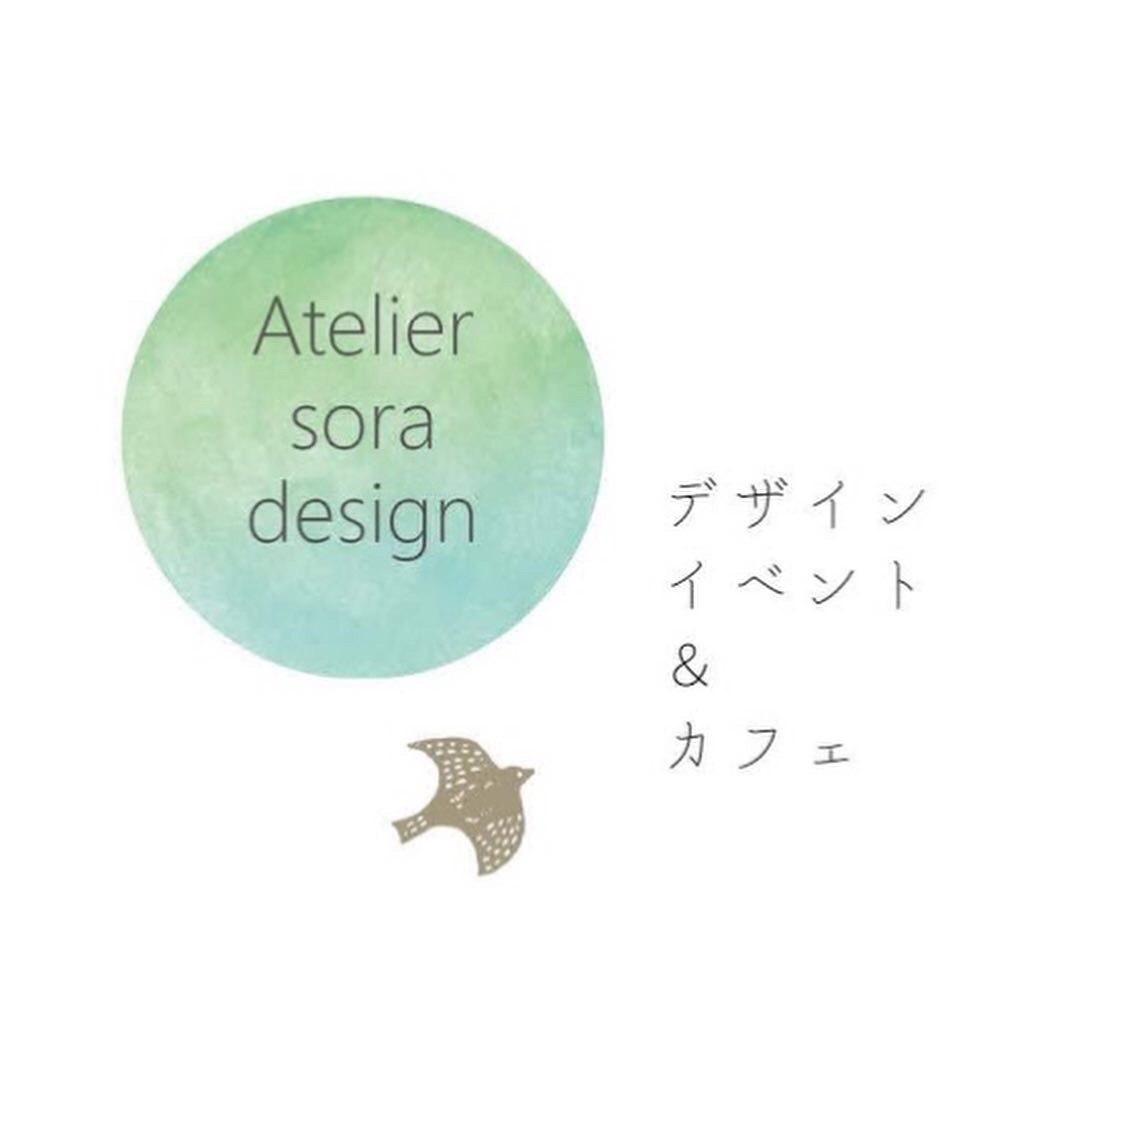 Atelier sora design